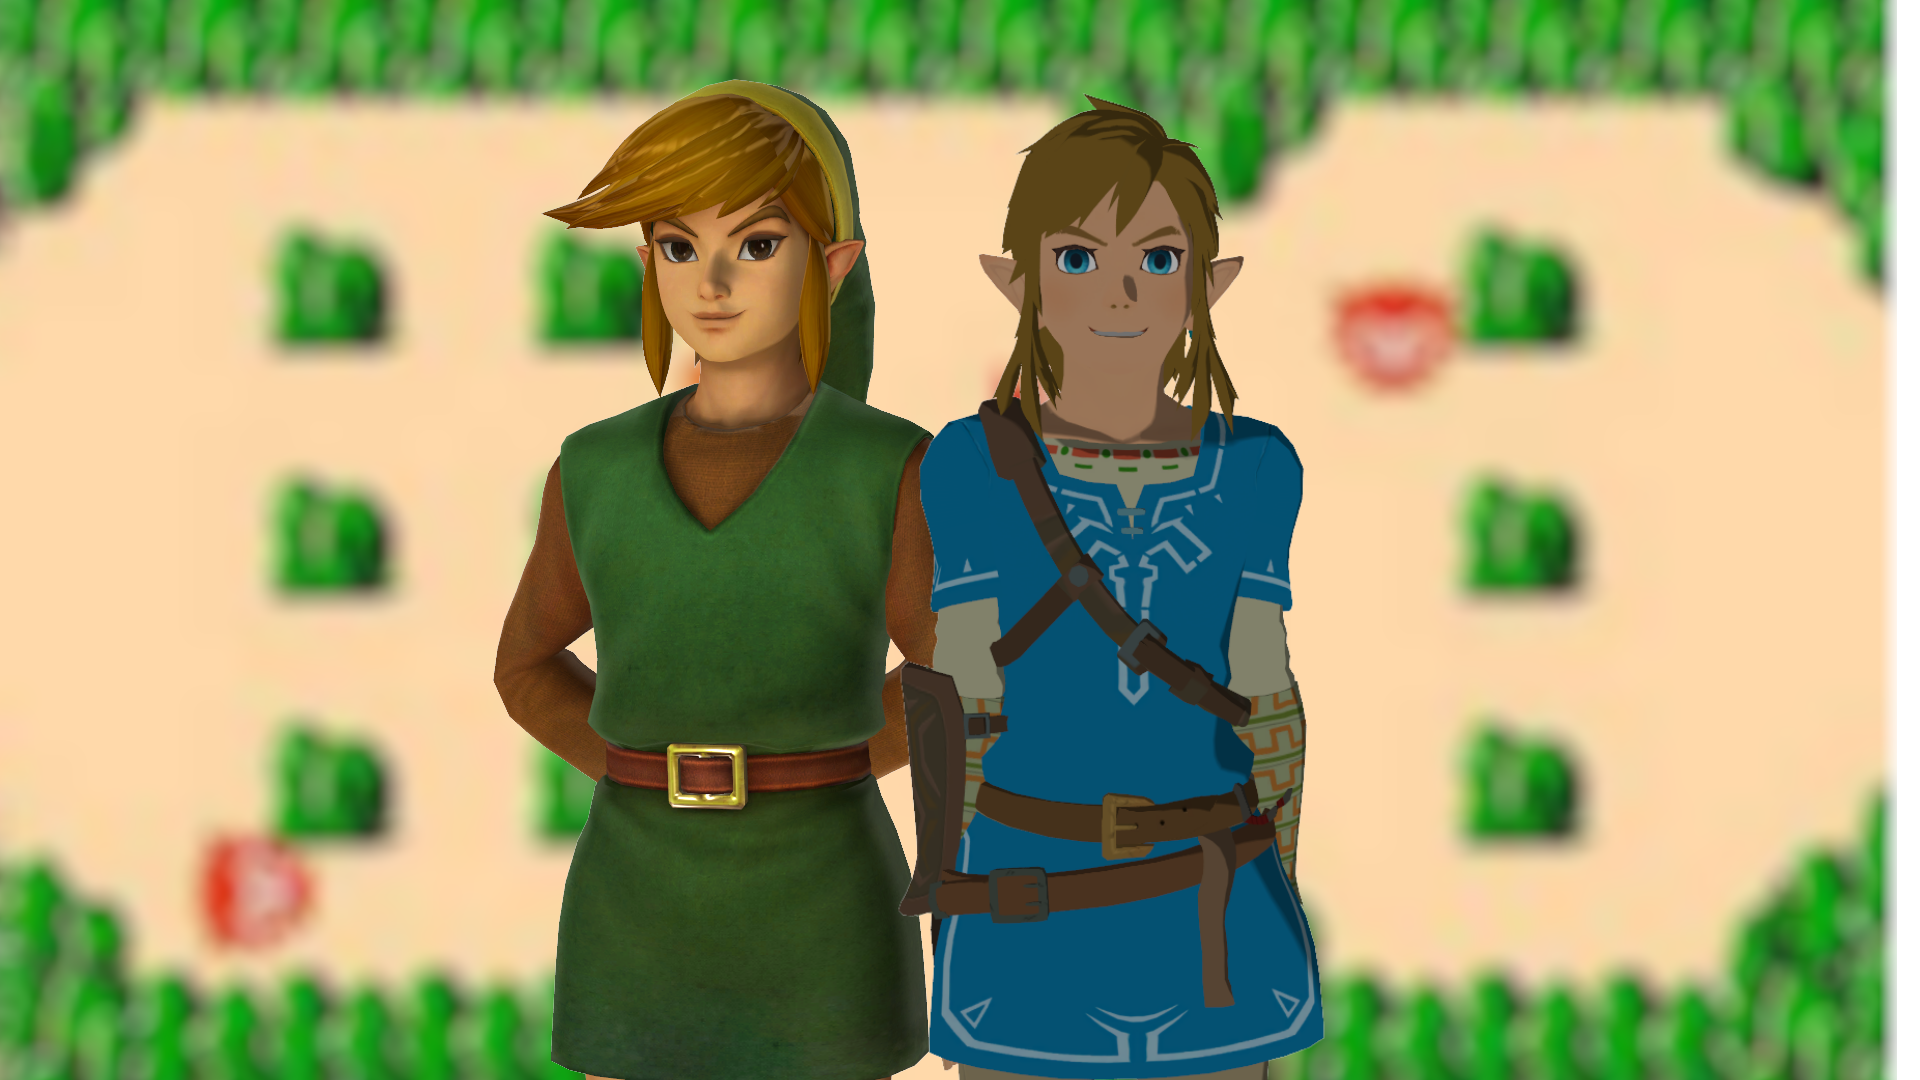 MMD Legend of Zelda - BOTW - Link DL by Pikapika-2000 on DeviantArt